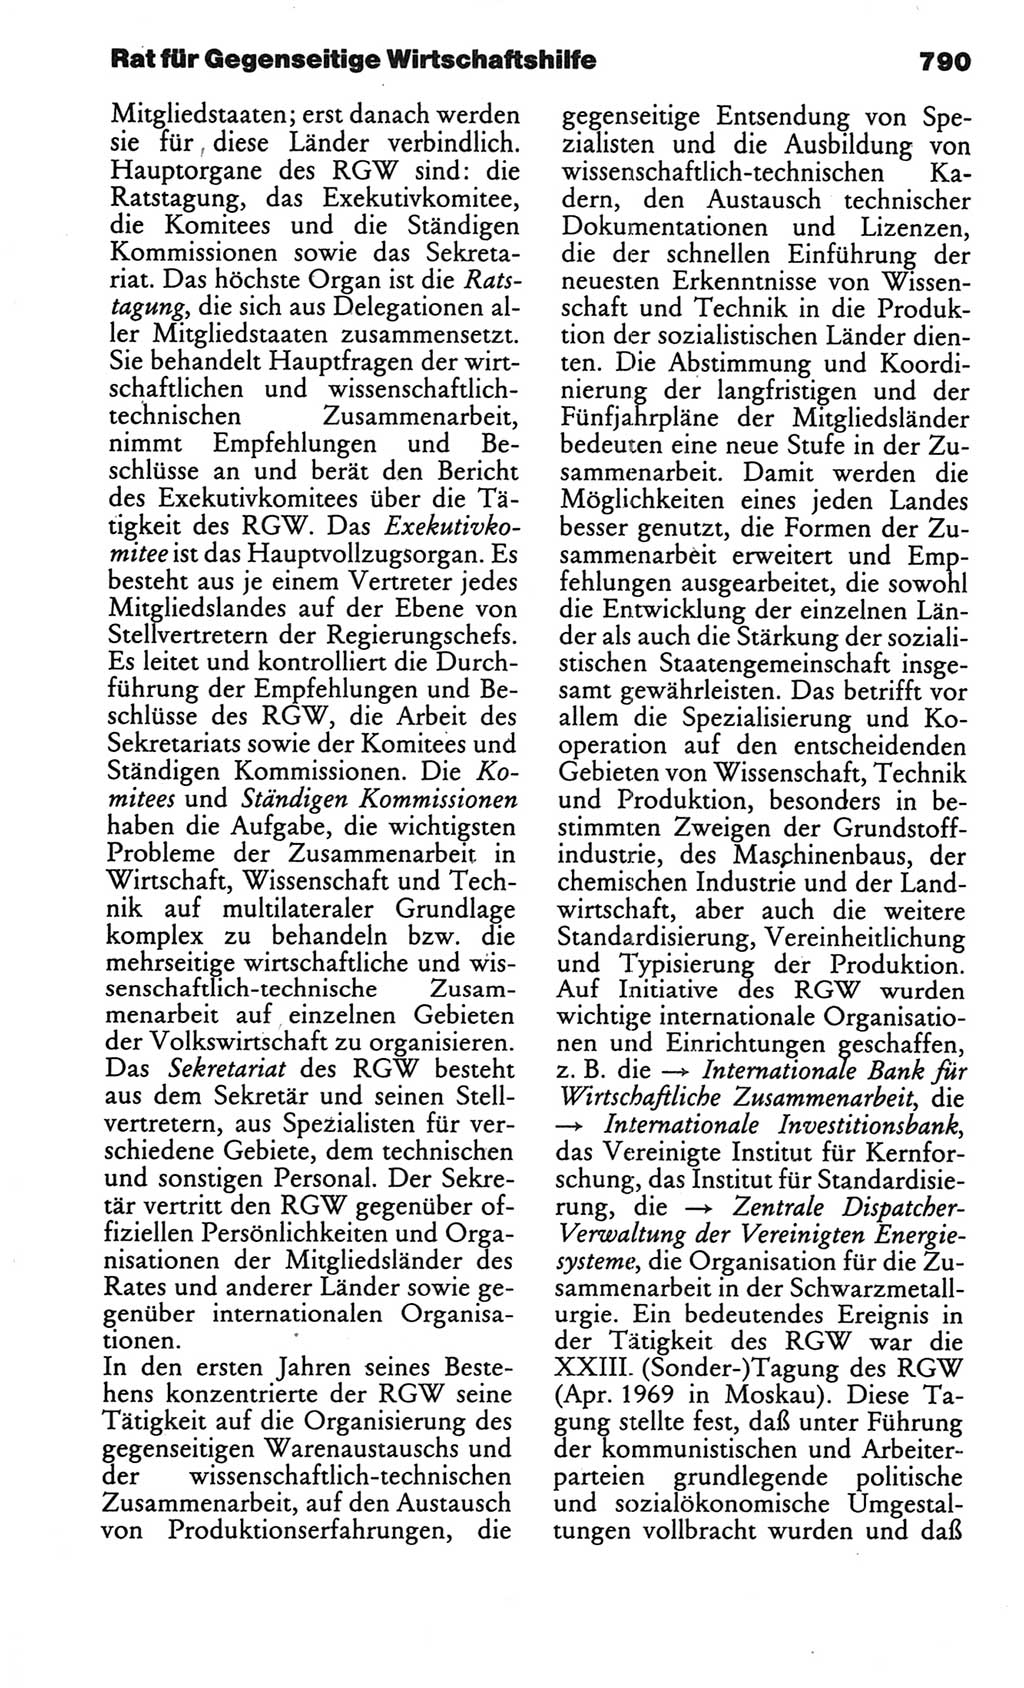 Kleines politisches Wörterbuch [Deutsche Demokratische Republik (DDR)] 1986, Seite 790 (Kl. pol. Wb. DDR 1986, S. 790)